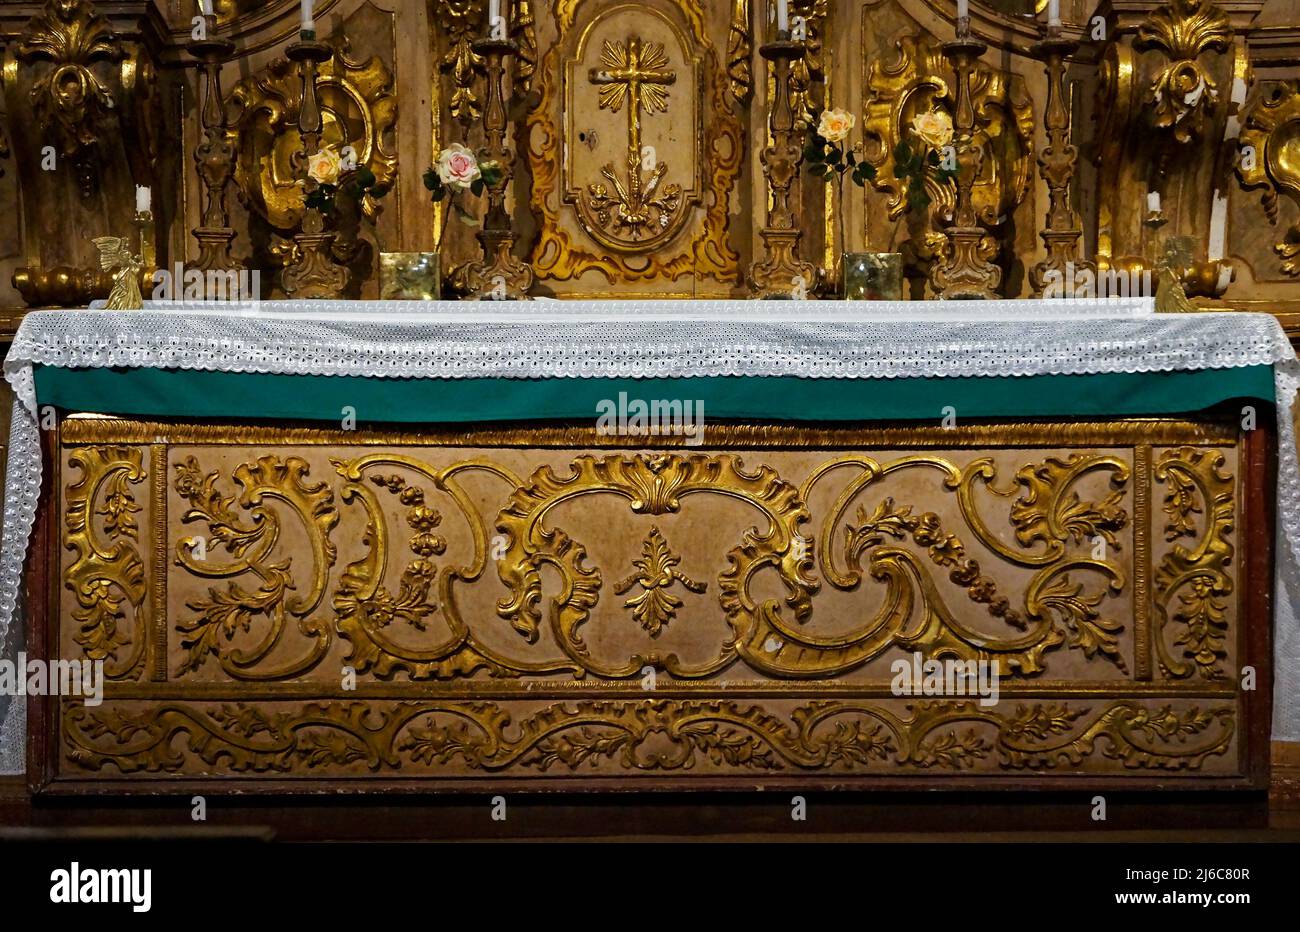 Ornamenti barocchi sull'altare della chiesa (dettaglio), Tiradentes, Minas Gerais, Brasile Foto Stock